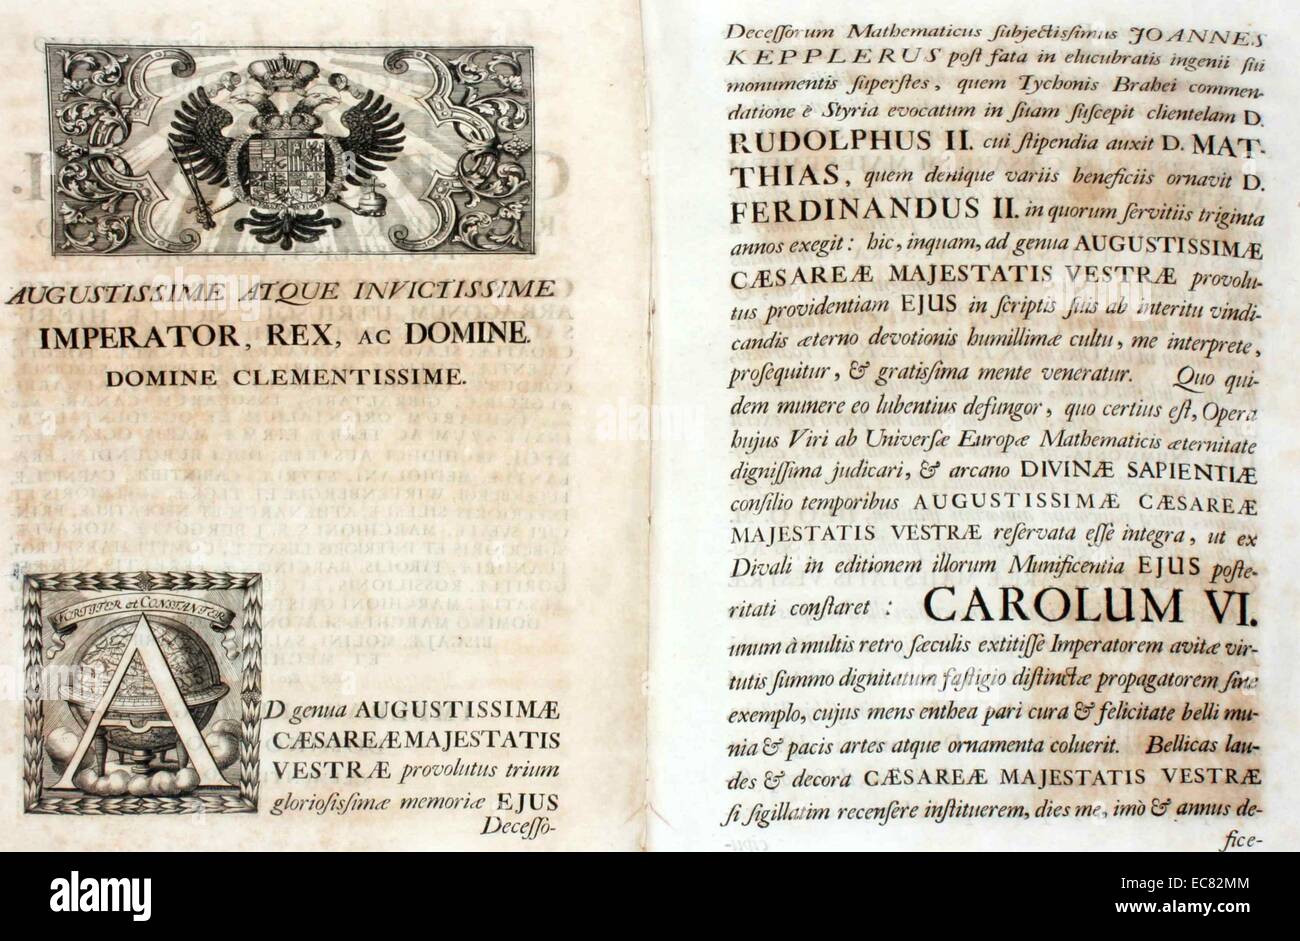 Johannes Kepler 1571 - Novembre 15, 1630), matematico tedesco, astronomo e astrologo. Joannis Kepleri aliorumque epistolae mutuae (Keplero corrispondenza scientifica, a cura di Michael Gottlieb Hansch, che contiene anche la prima biografia di Keplero) 1718 Foto Stock